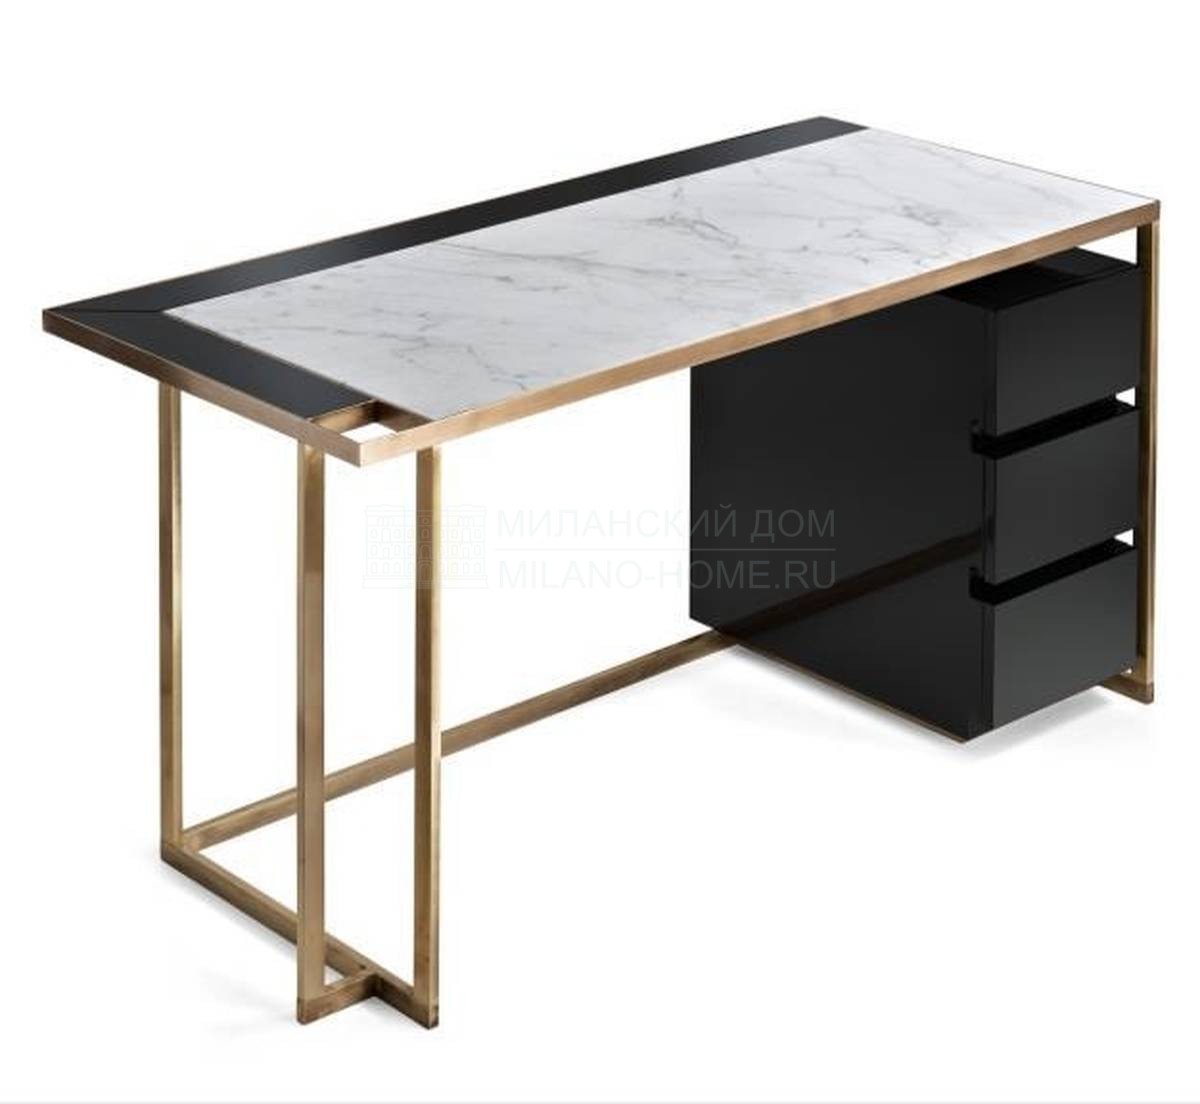 Письменный стол Gary writing desk with drawers из Италии фабрики MARIONI